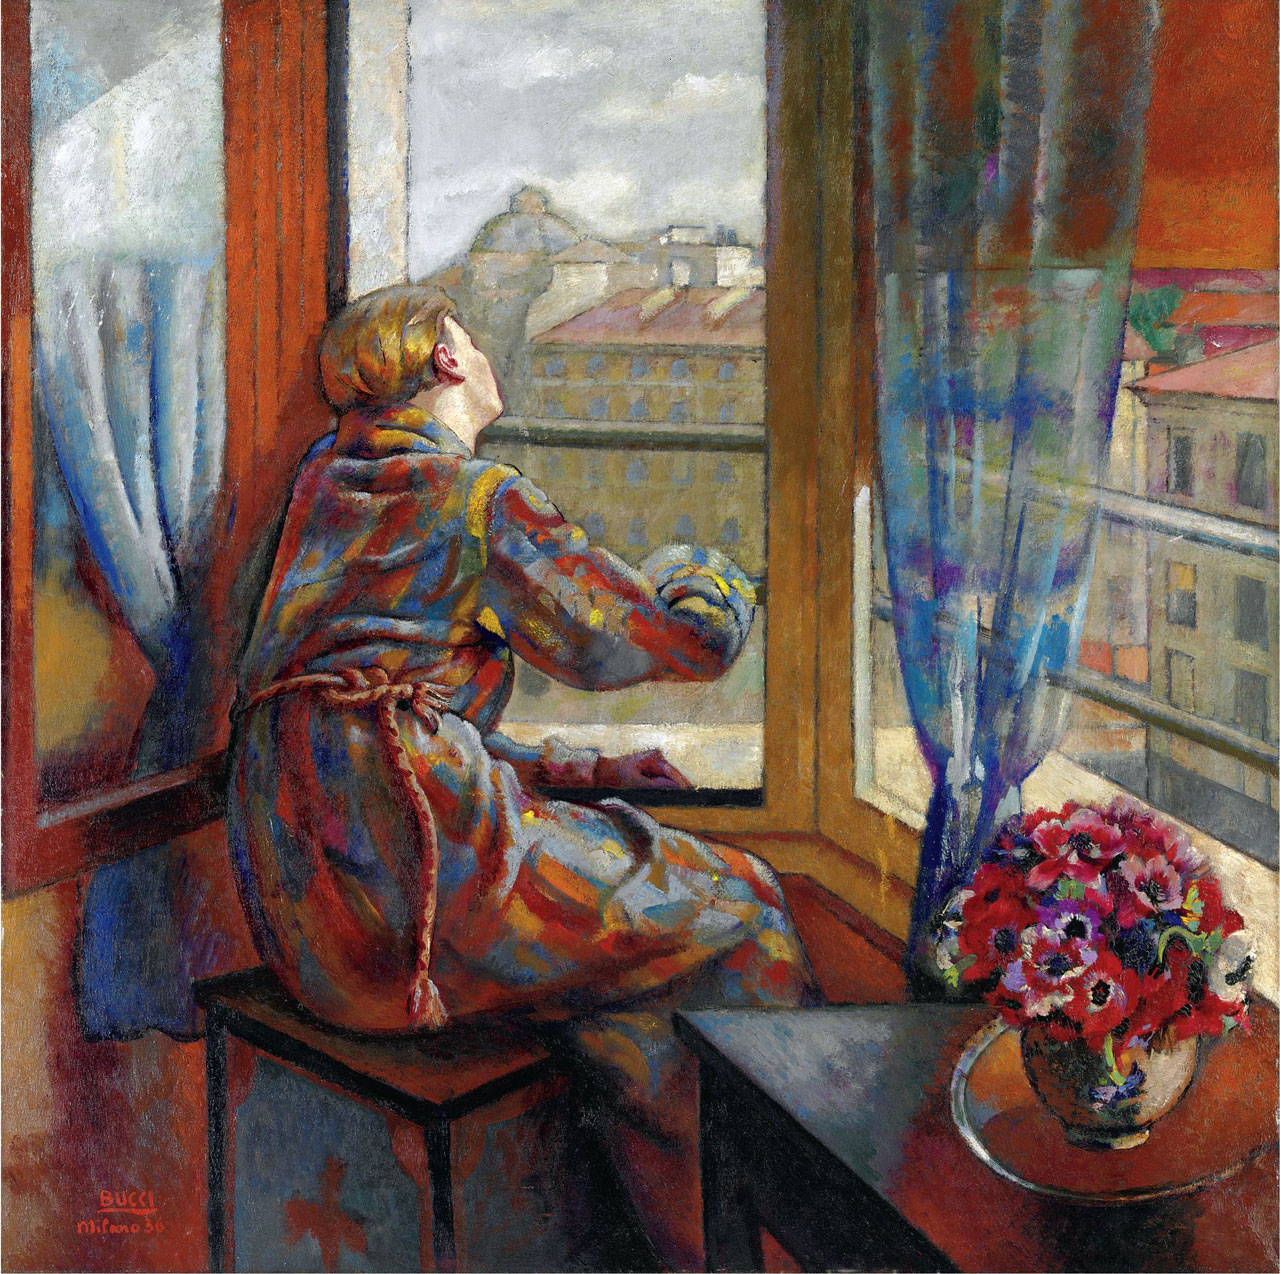 Anselmo Bucci, Primavera (1936; olio su tela, 162 x 162 cm; Collezione privata)